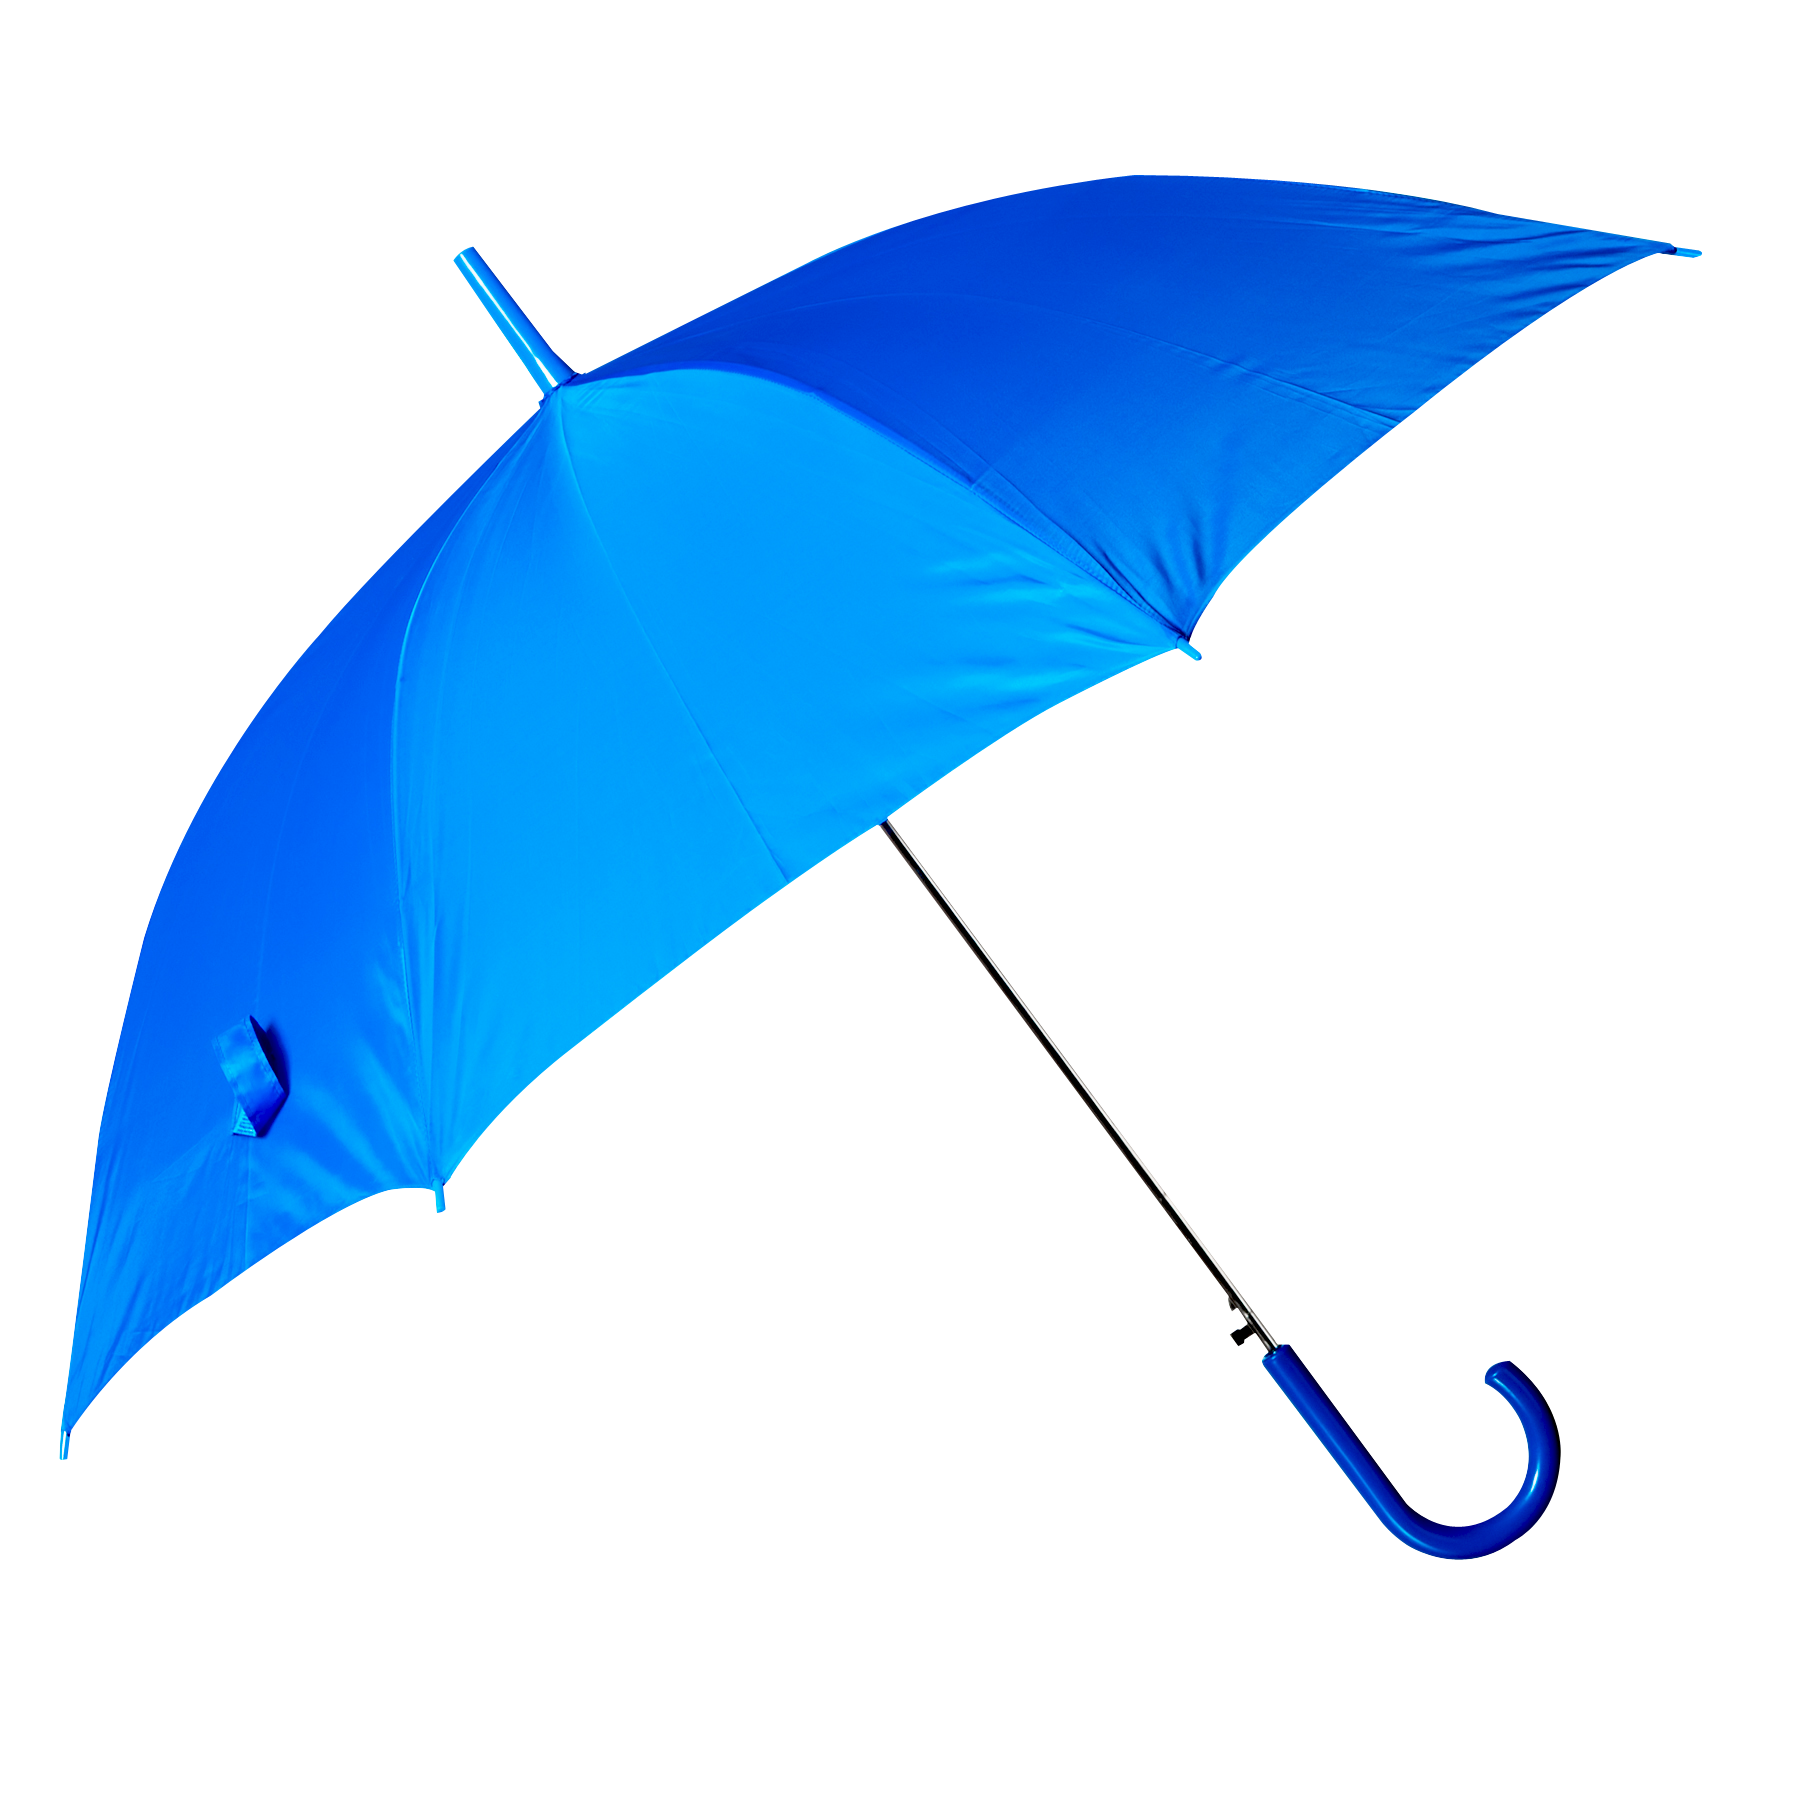 Blue Umbrella PNG Image